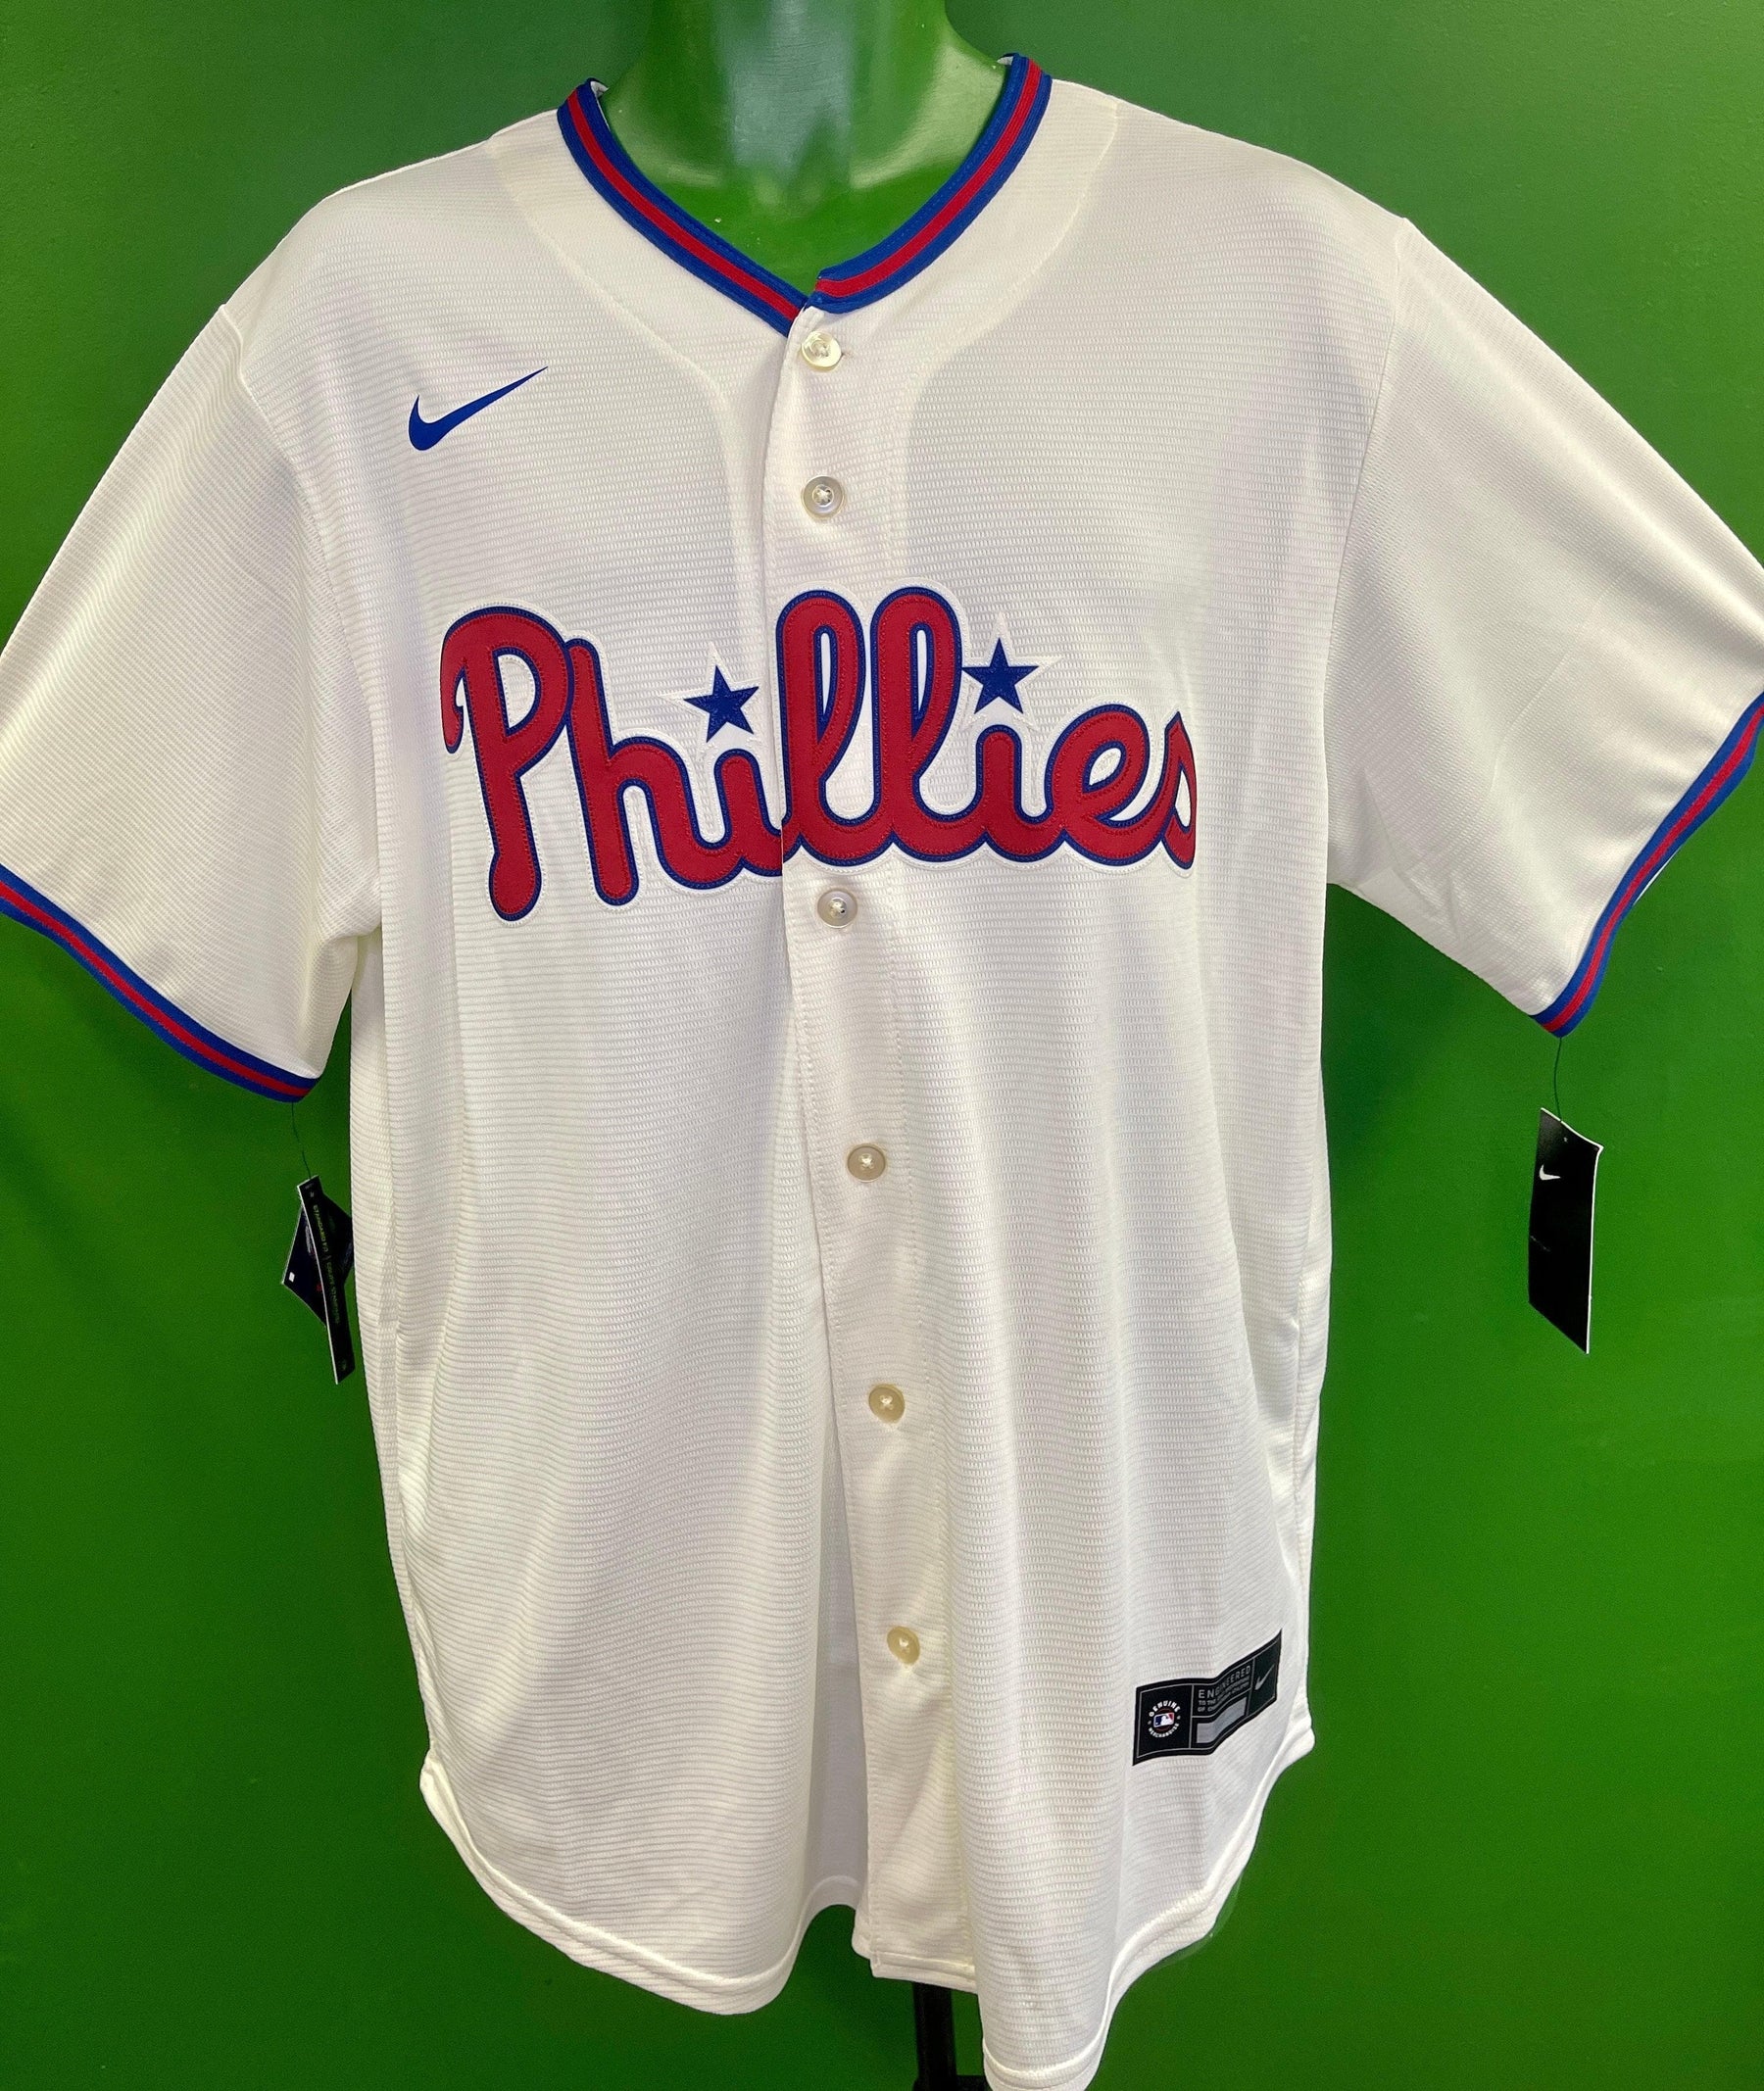 philadelphia phillies cream jersey